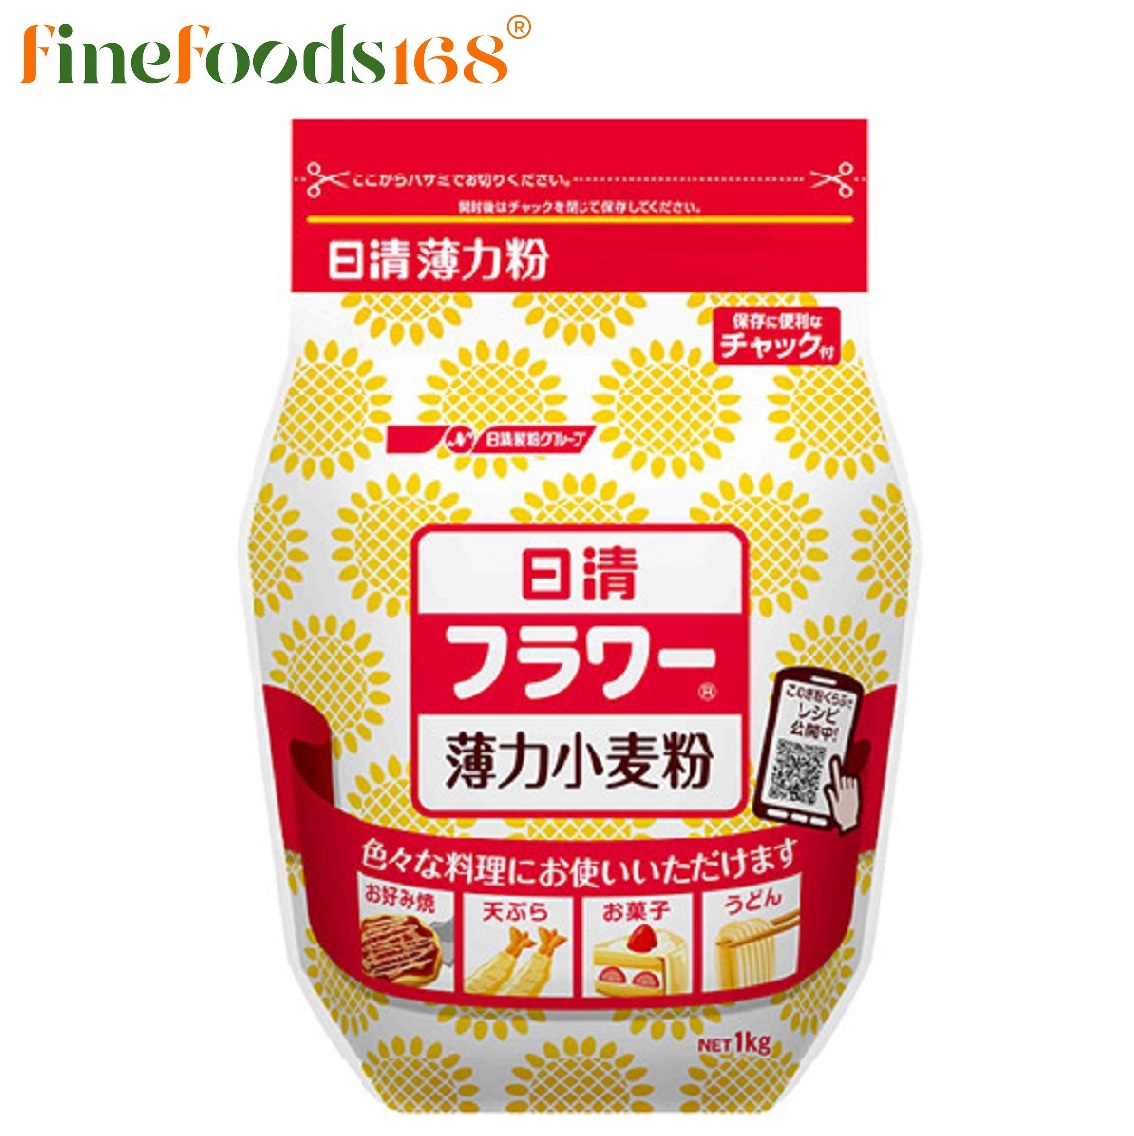 นิสชิน แป้งสาลี 1 กิโลกรัม Nisshin Hakuriki Ko Flour 1 Kg.